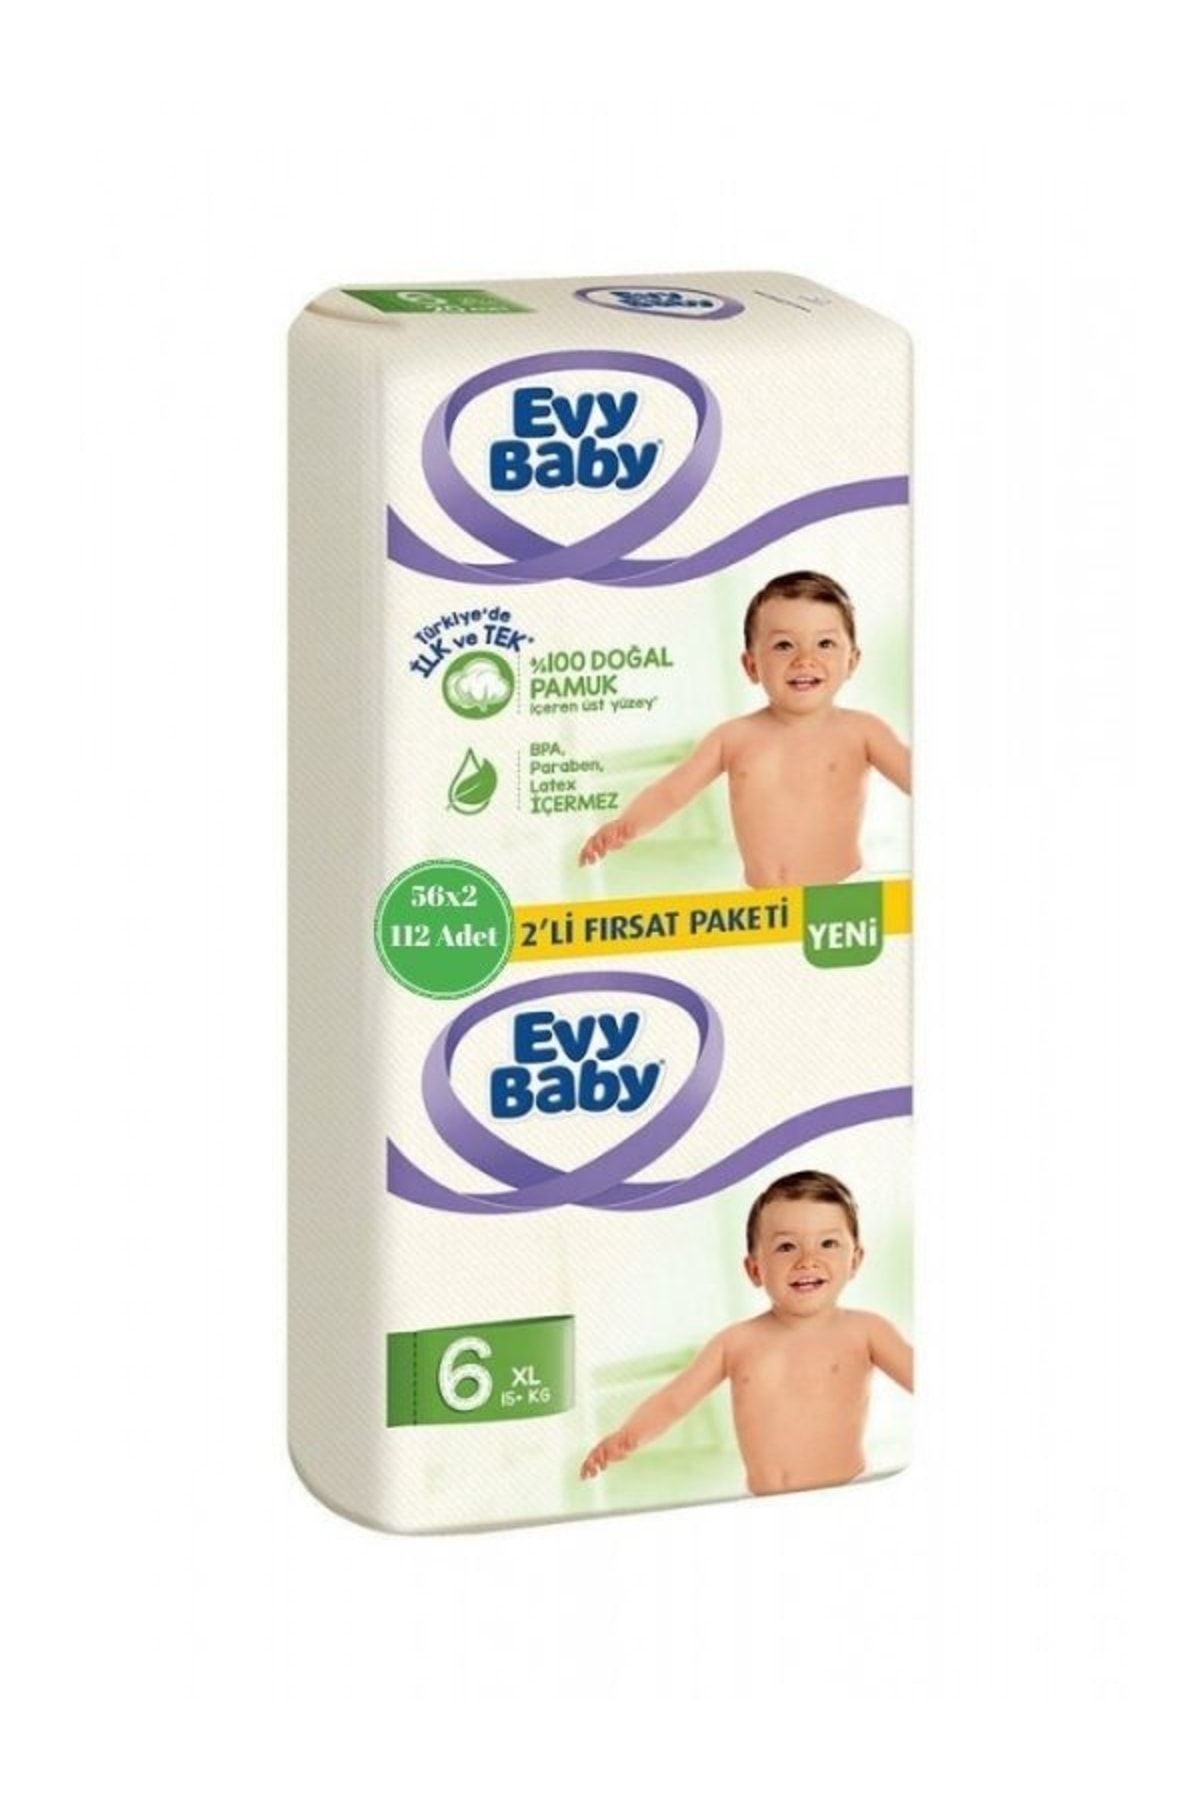 Evy Baby Bebek Bezi 6 Beden Xl 2'li Fırsat Paketi (56x2) 112 Adet Yeni